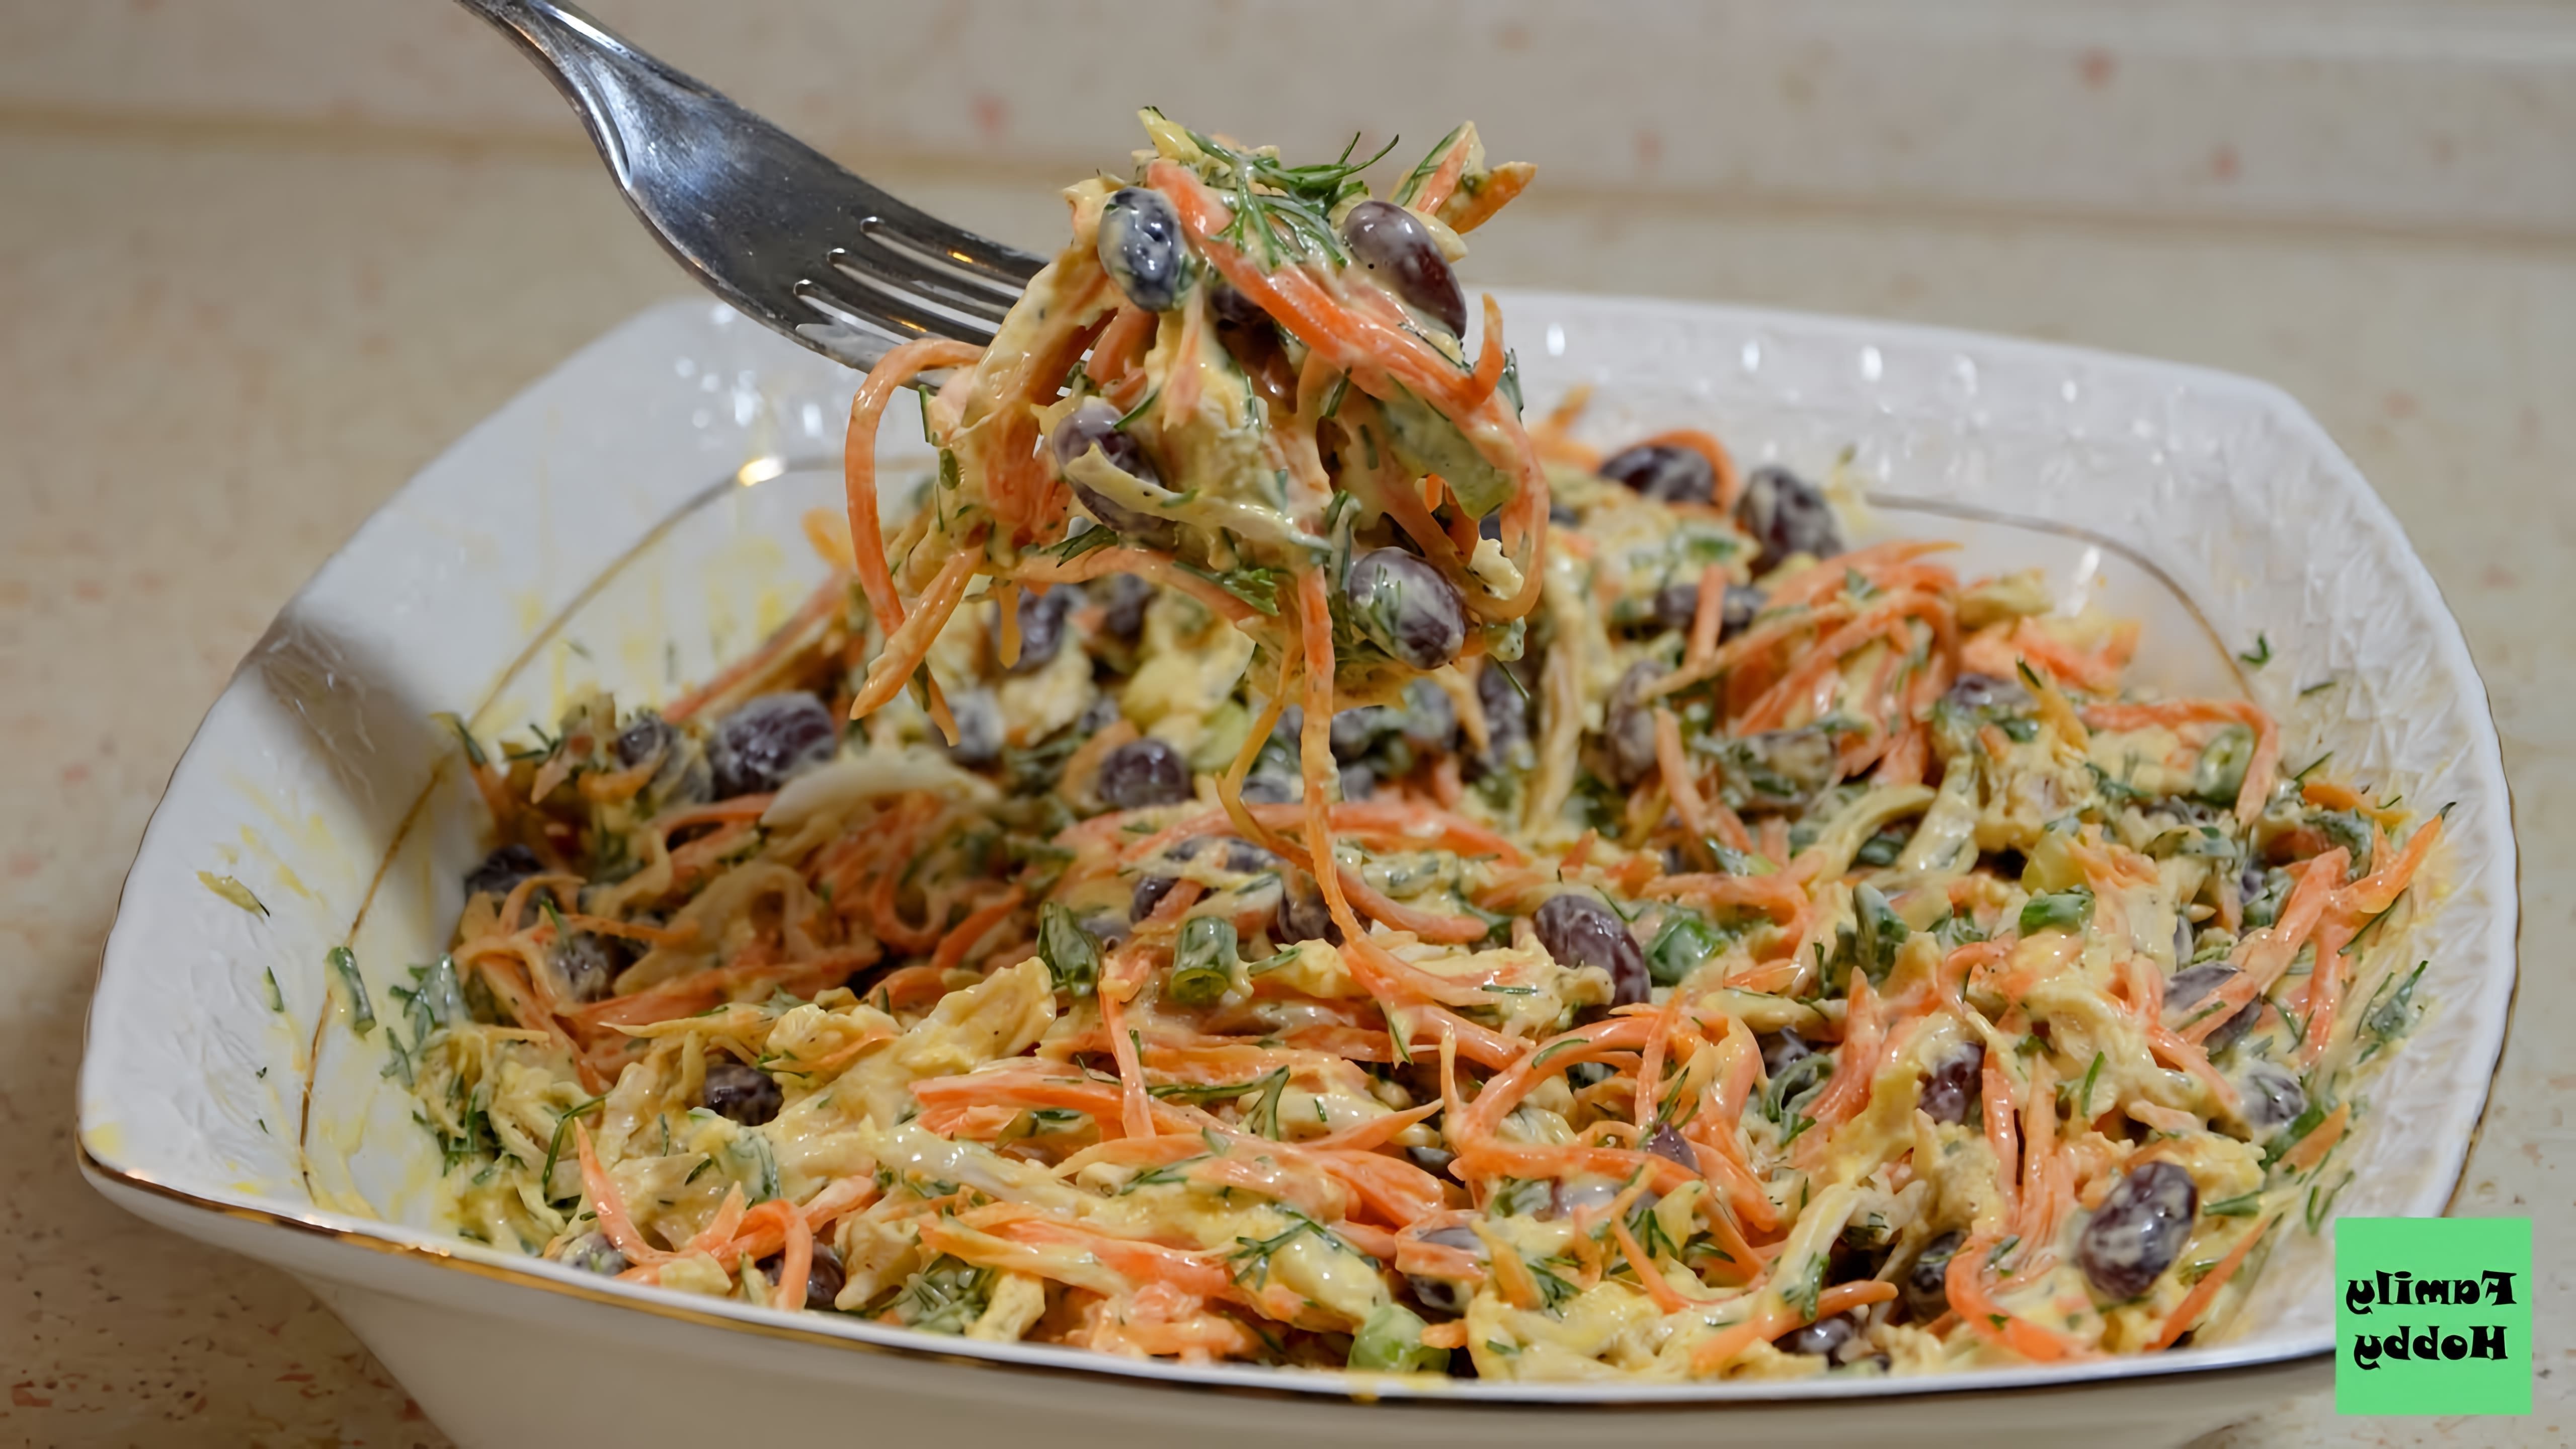 В этом видео демонстрируется процесс приготовления салата с куриной грудкой и морковью по-корейски